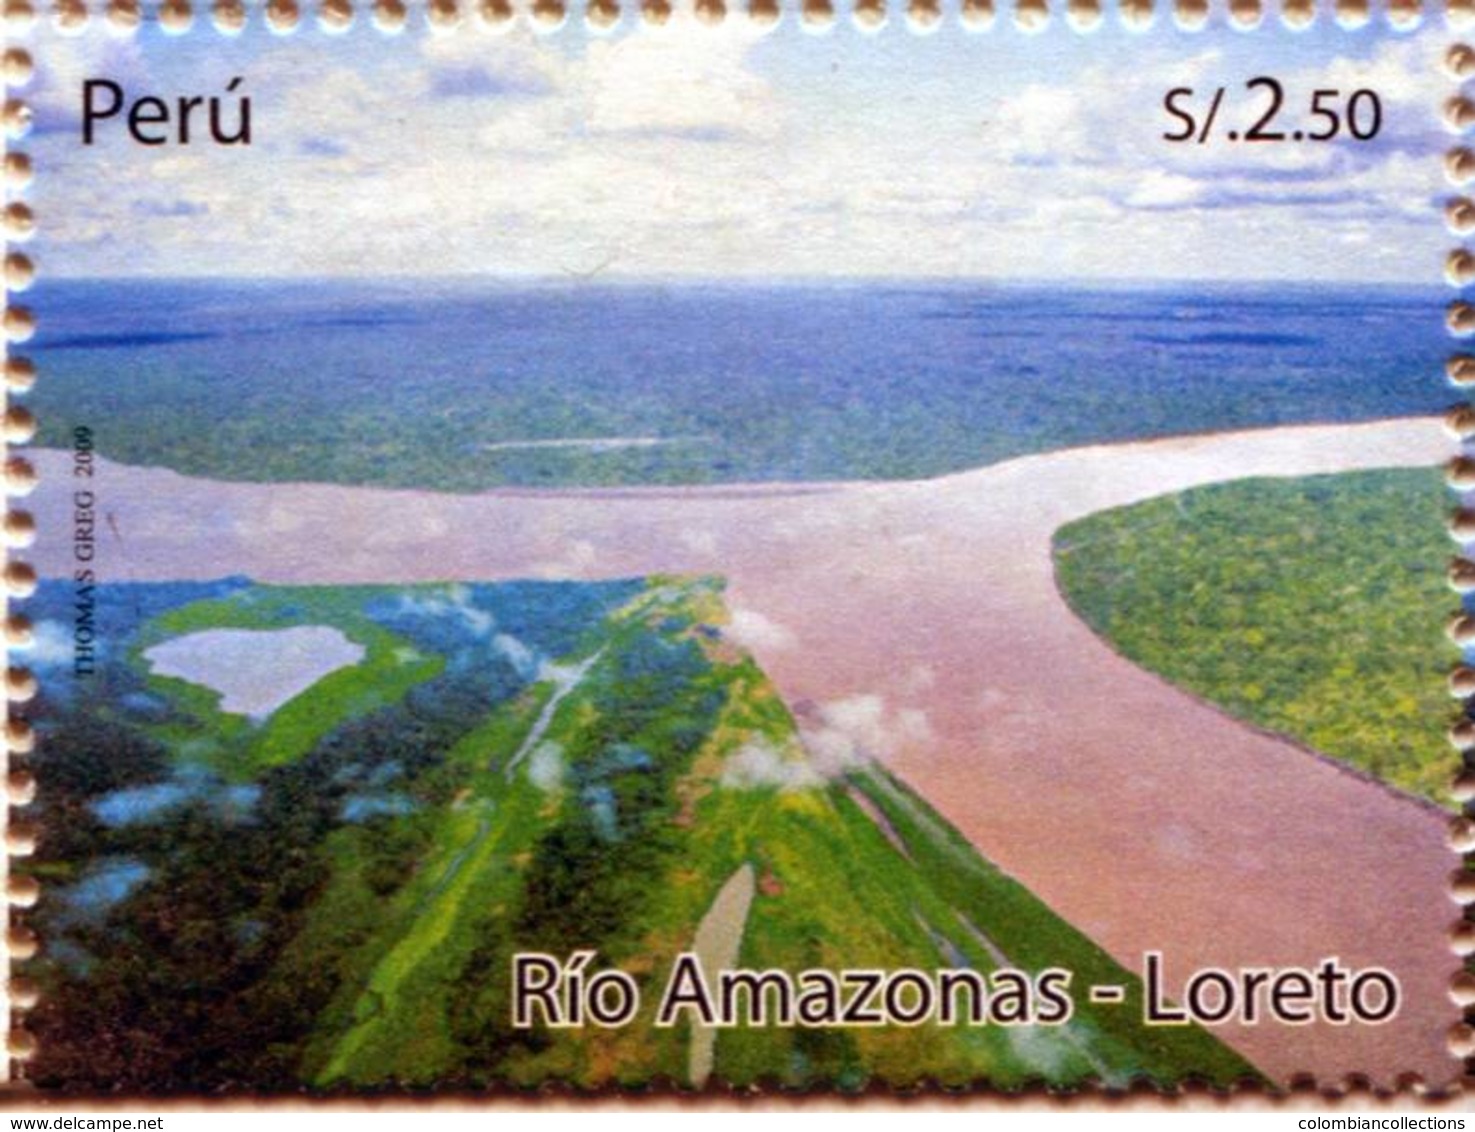 Lote P2009-13, Peru, 2009, Sello, Stamp, Rio Amazonas, Loreto, River, Forest, Tree - Perú